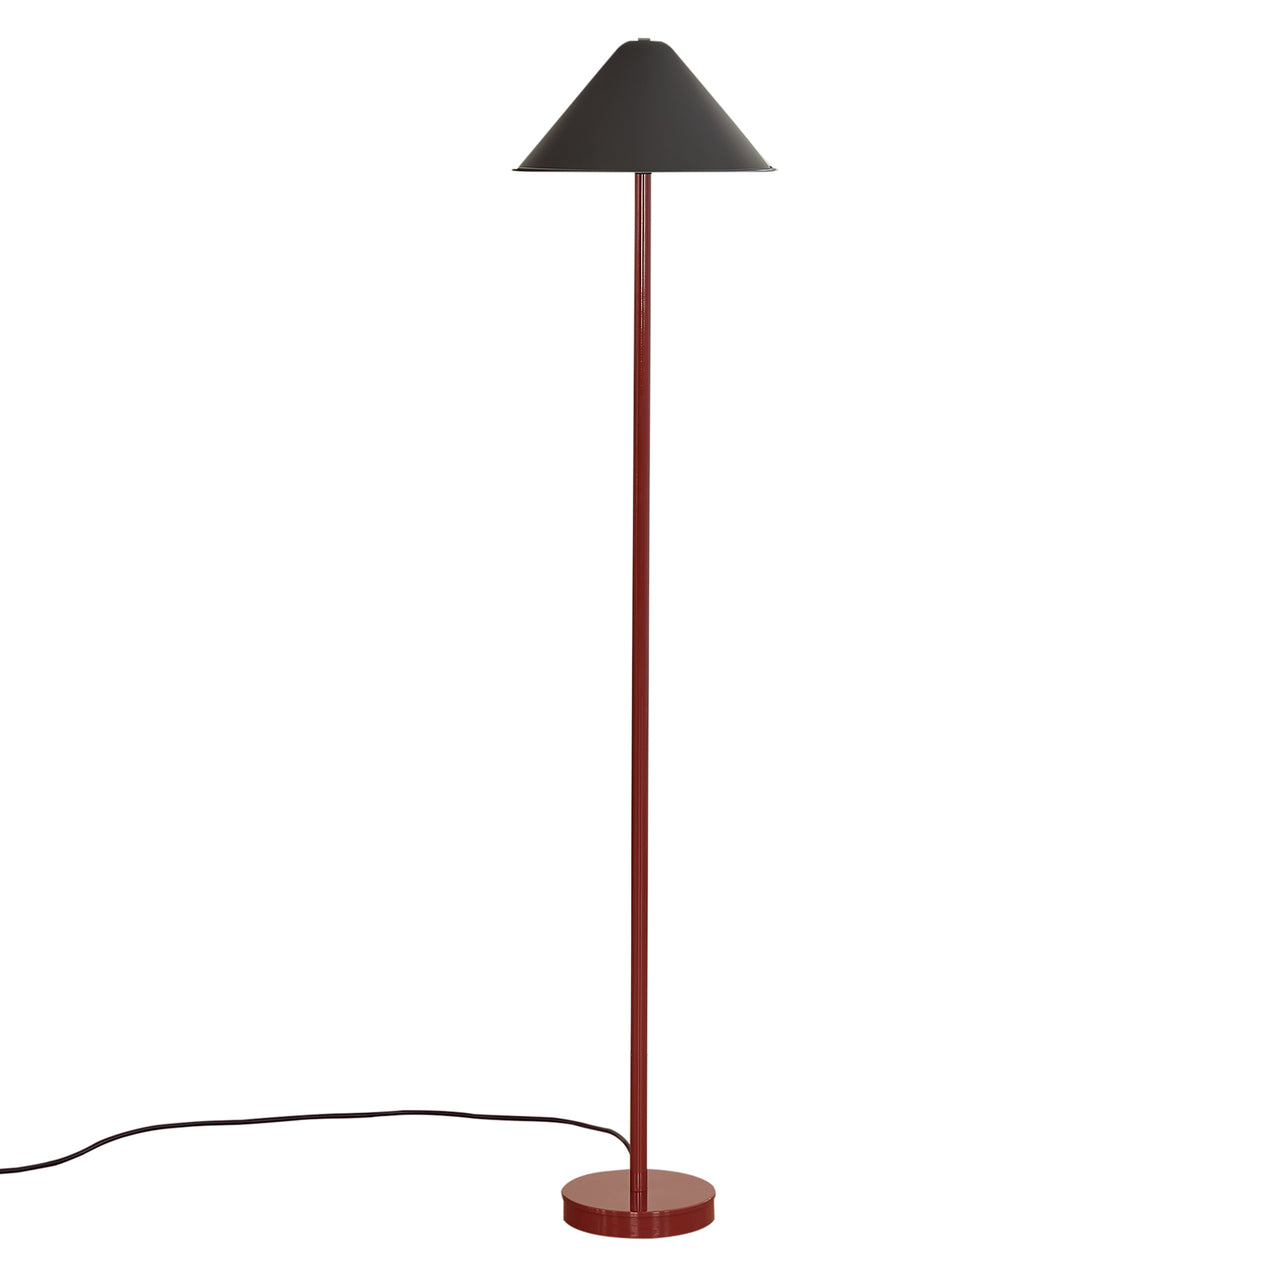 Tipi Floor Lamp: Black + Oxide Red